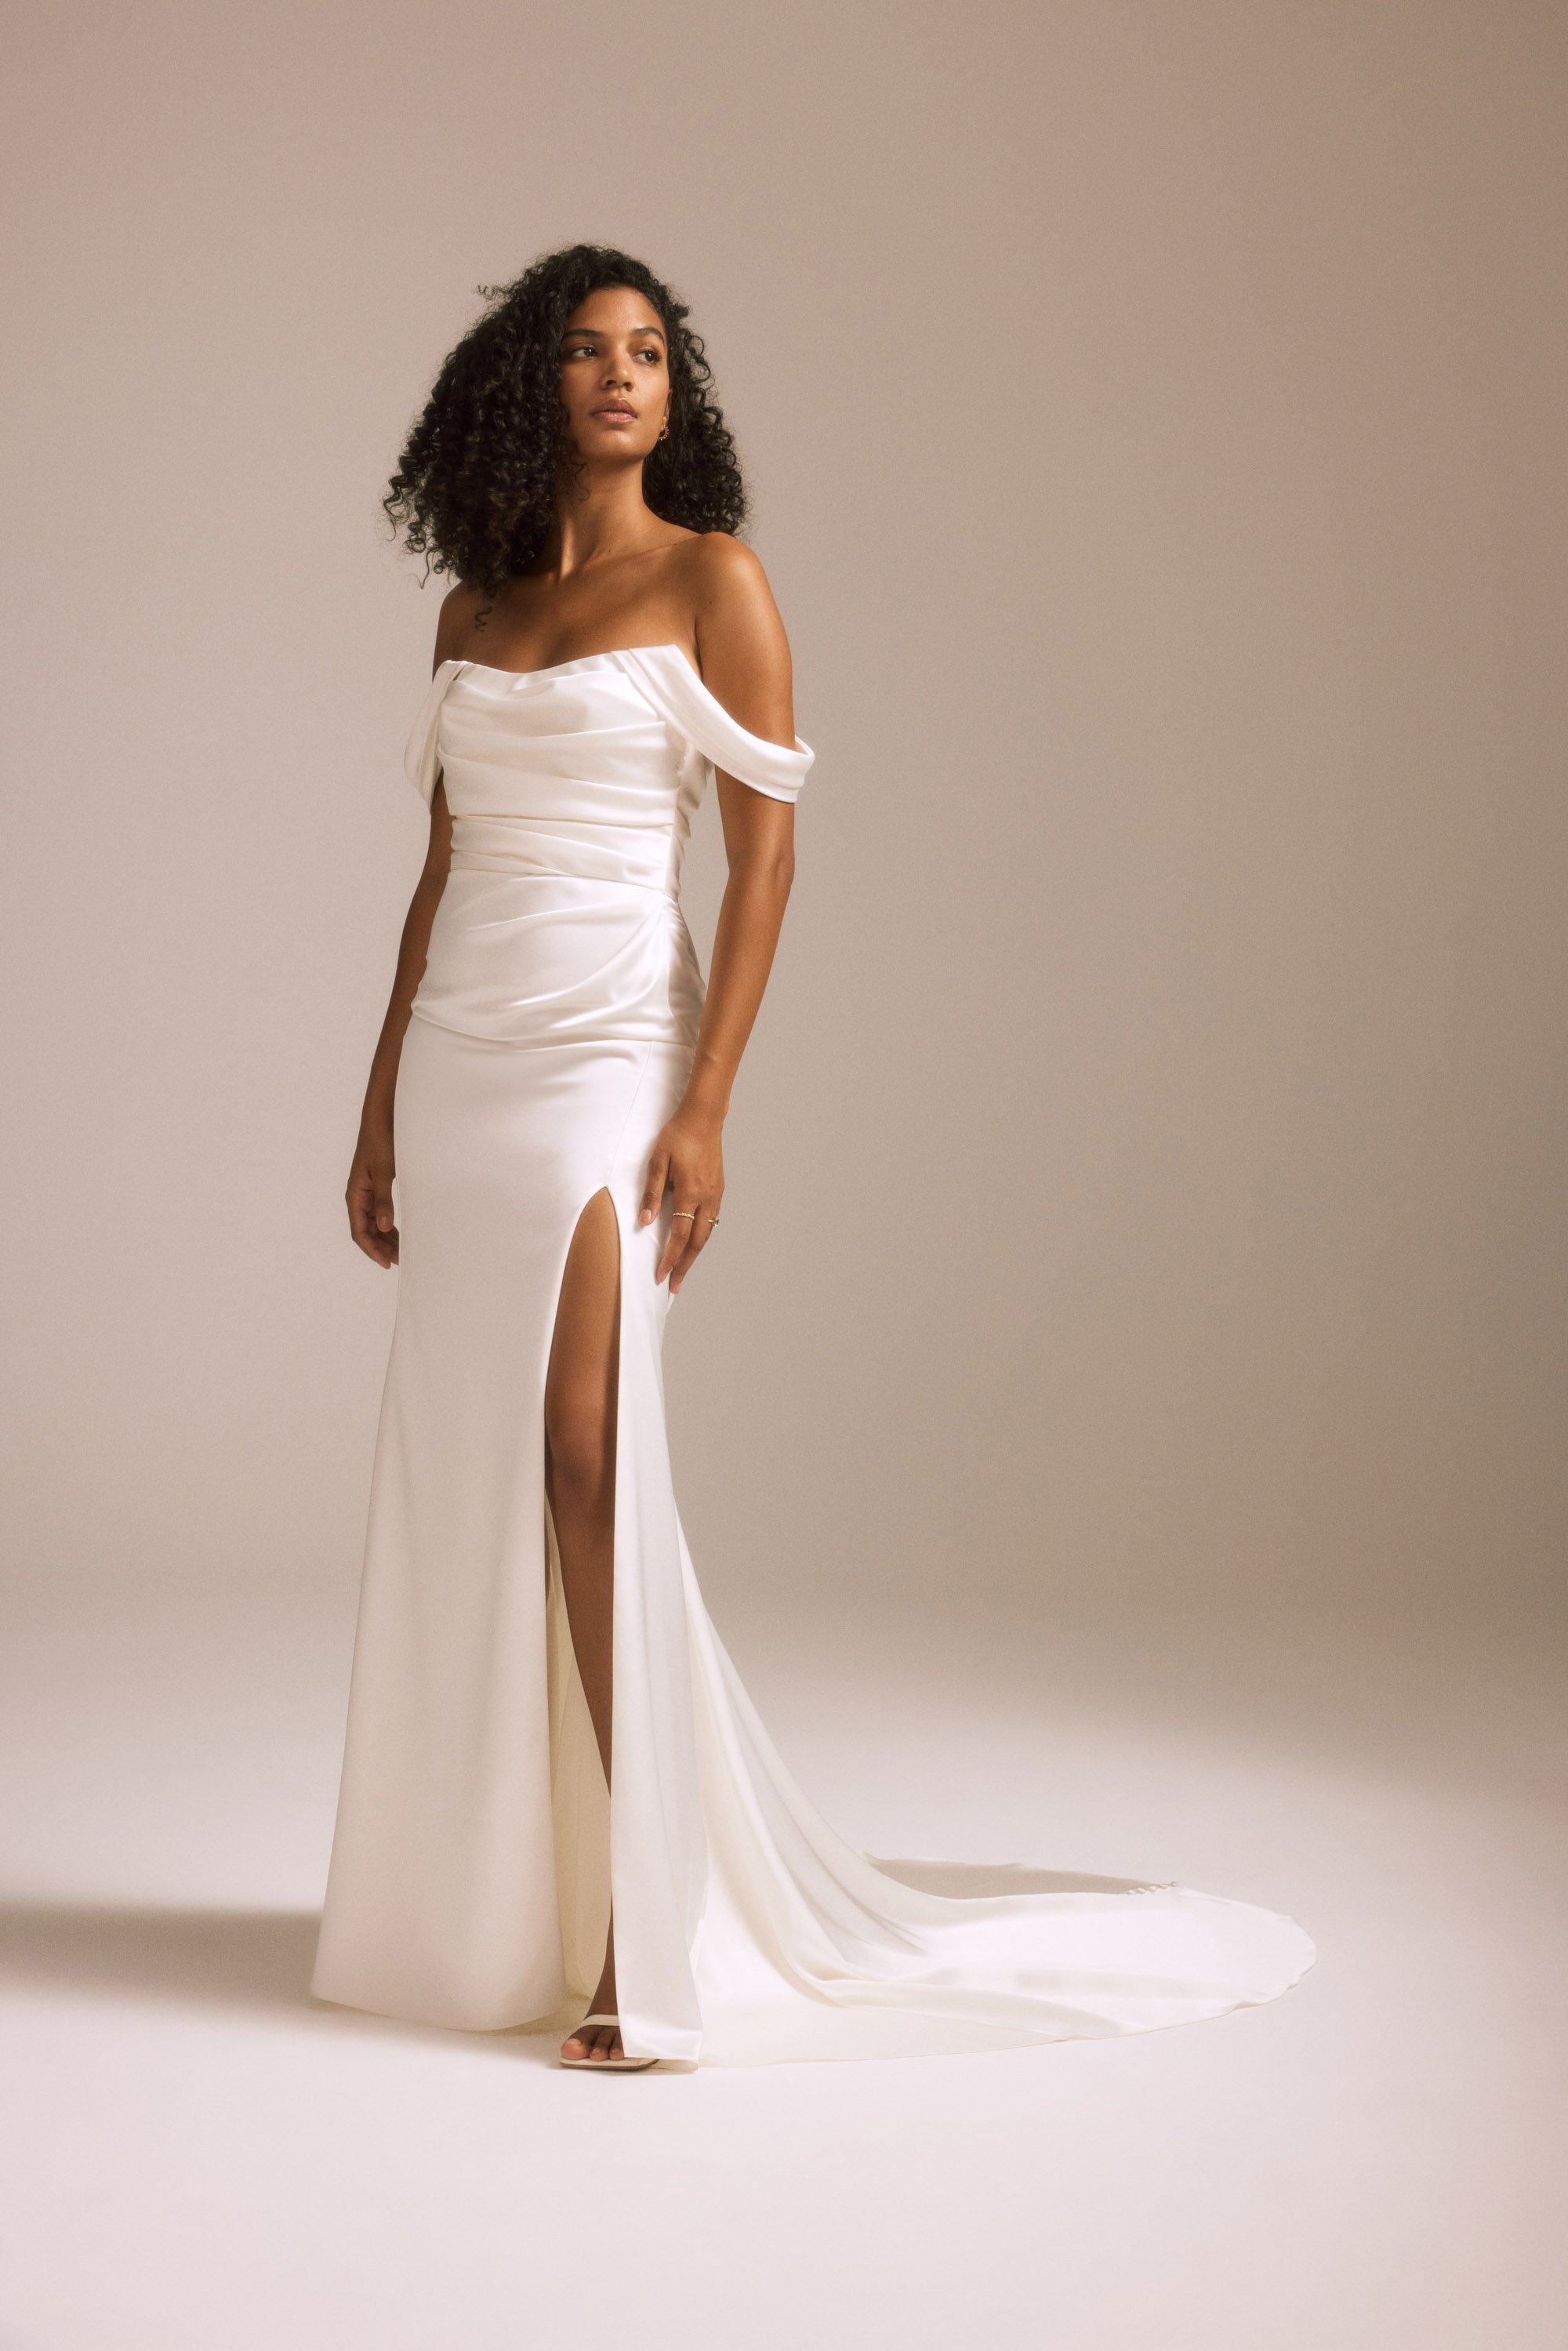 Nouvelle Amsale + Bridal + SYD + R453FS + Fluid Satin + Off-The-Shoulder + Fit-To-Flare Gown + Draped Skirt + Slit + Side.jpg